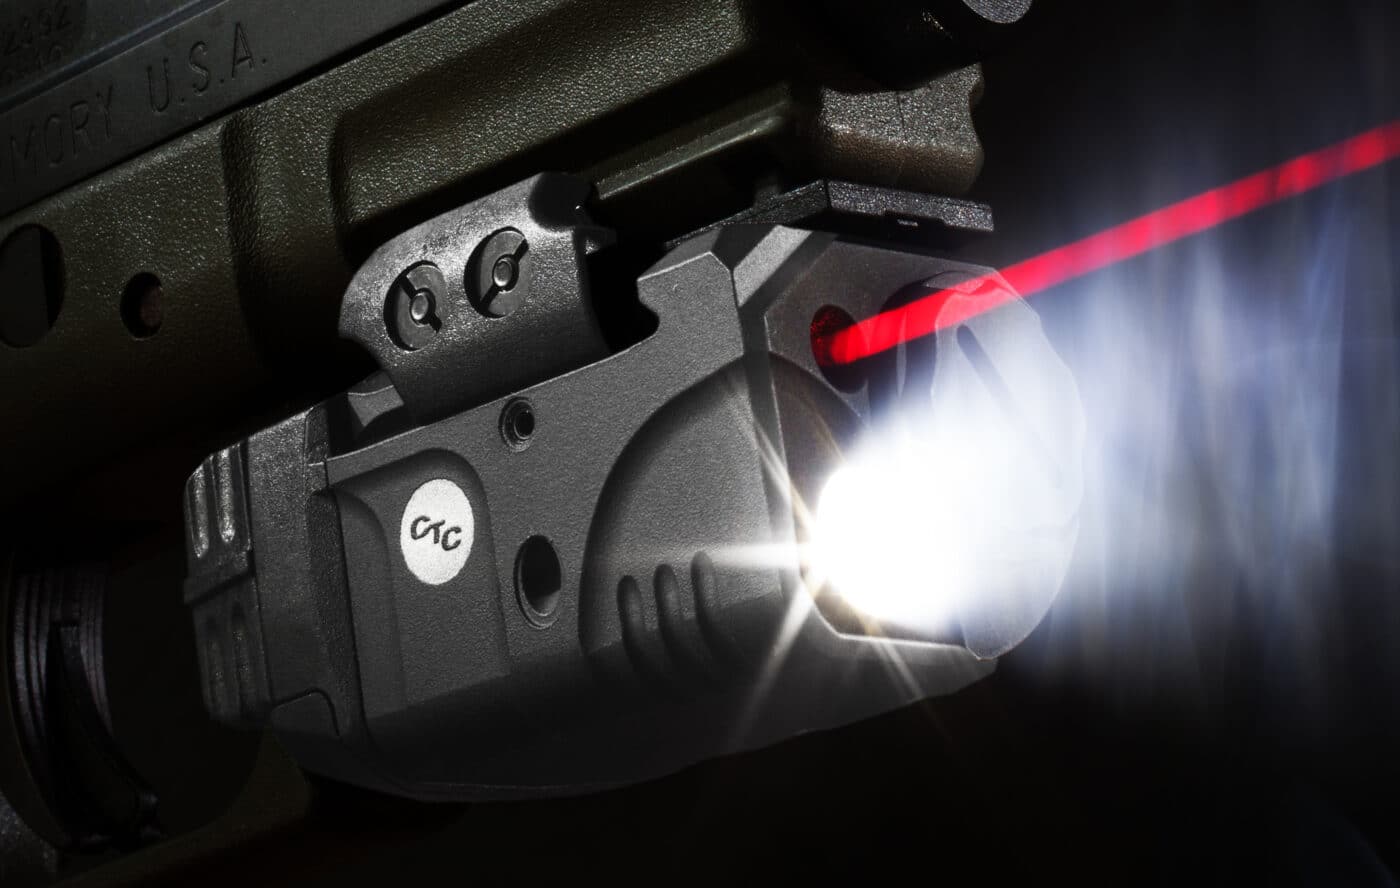 weaponlight mounted on XD pistol